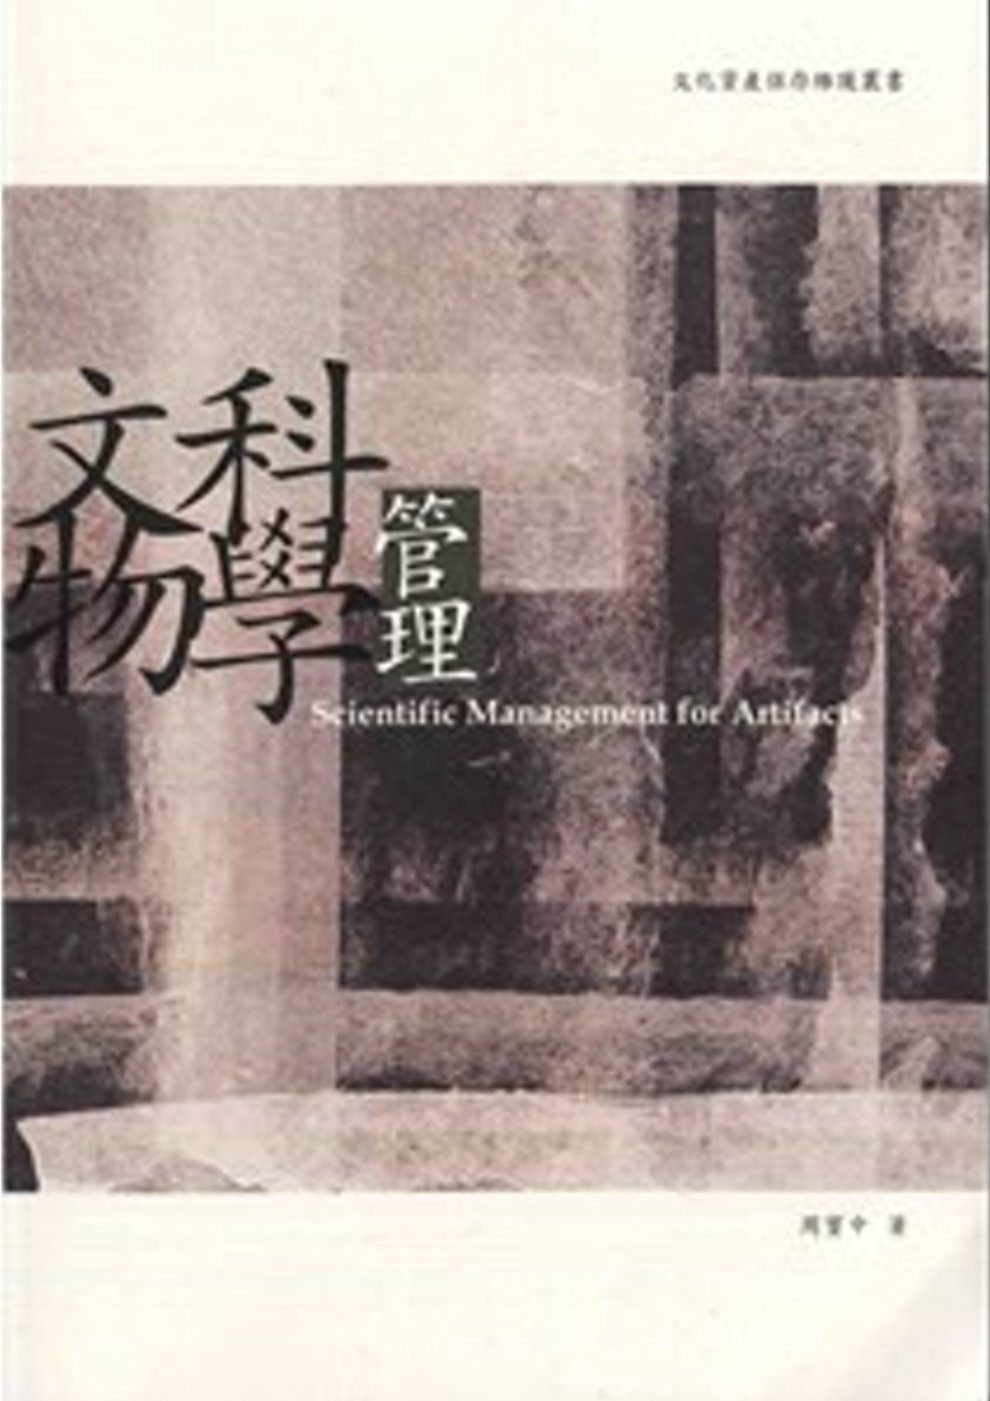 文物科學管理：文化資產保存維護叢書